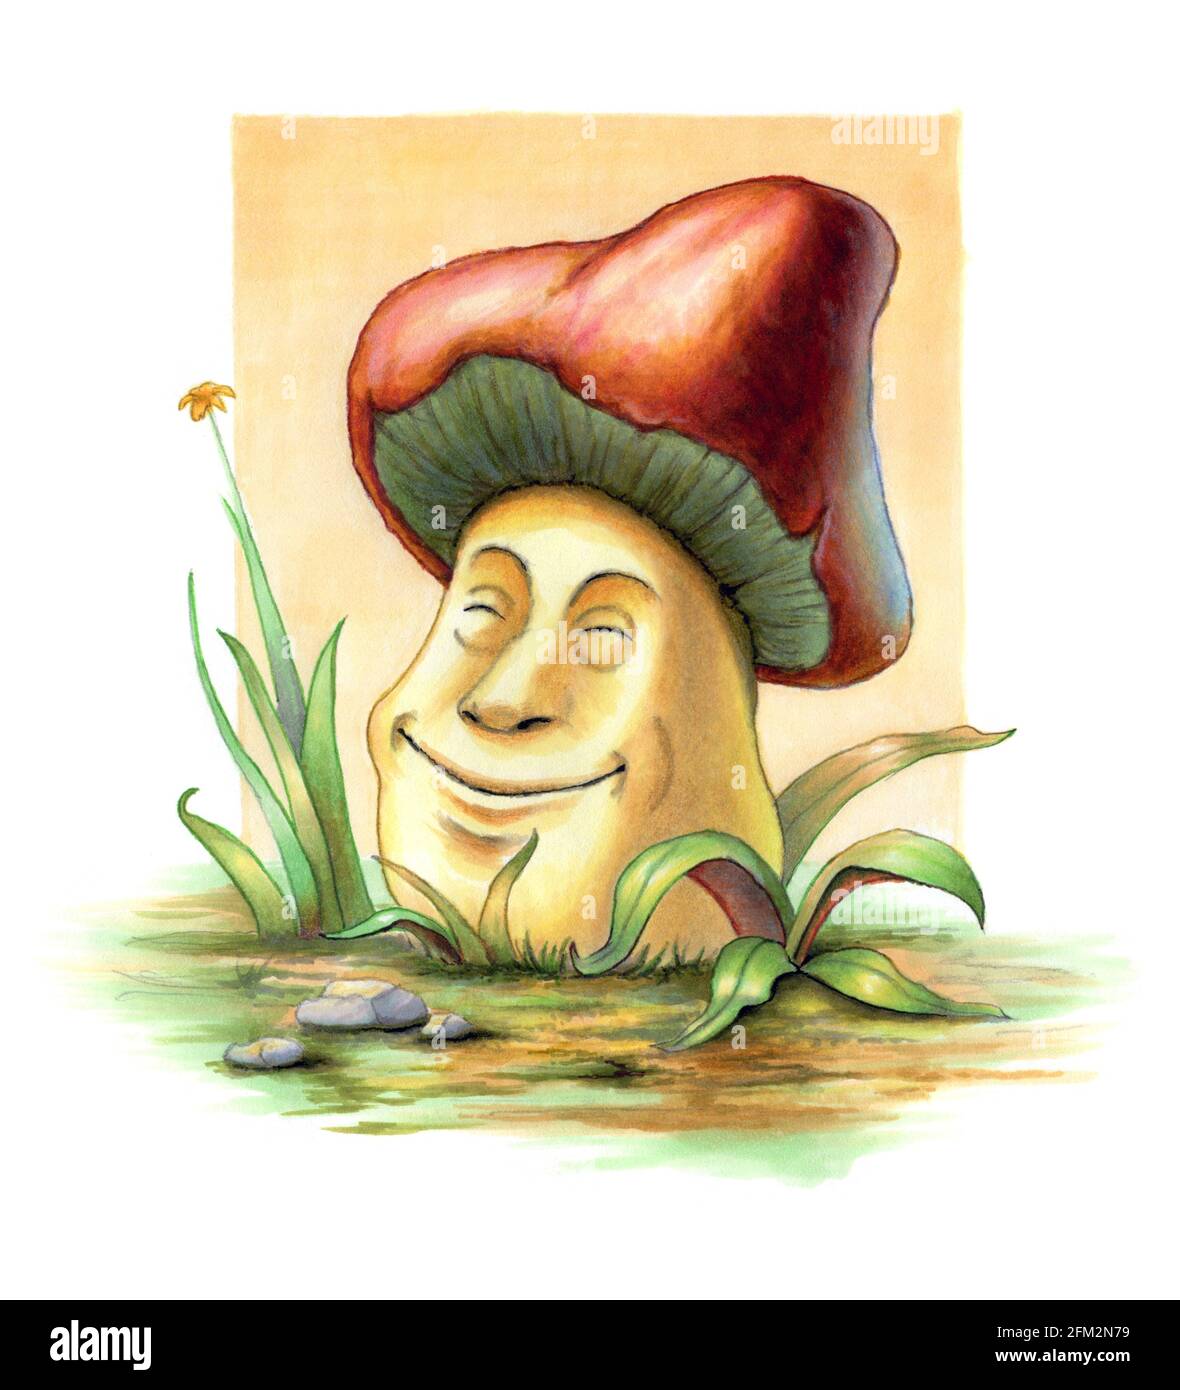 Champignon souriant entre quelques lames d'herbe. Illustration d'origine sur papier. Banque D'Images